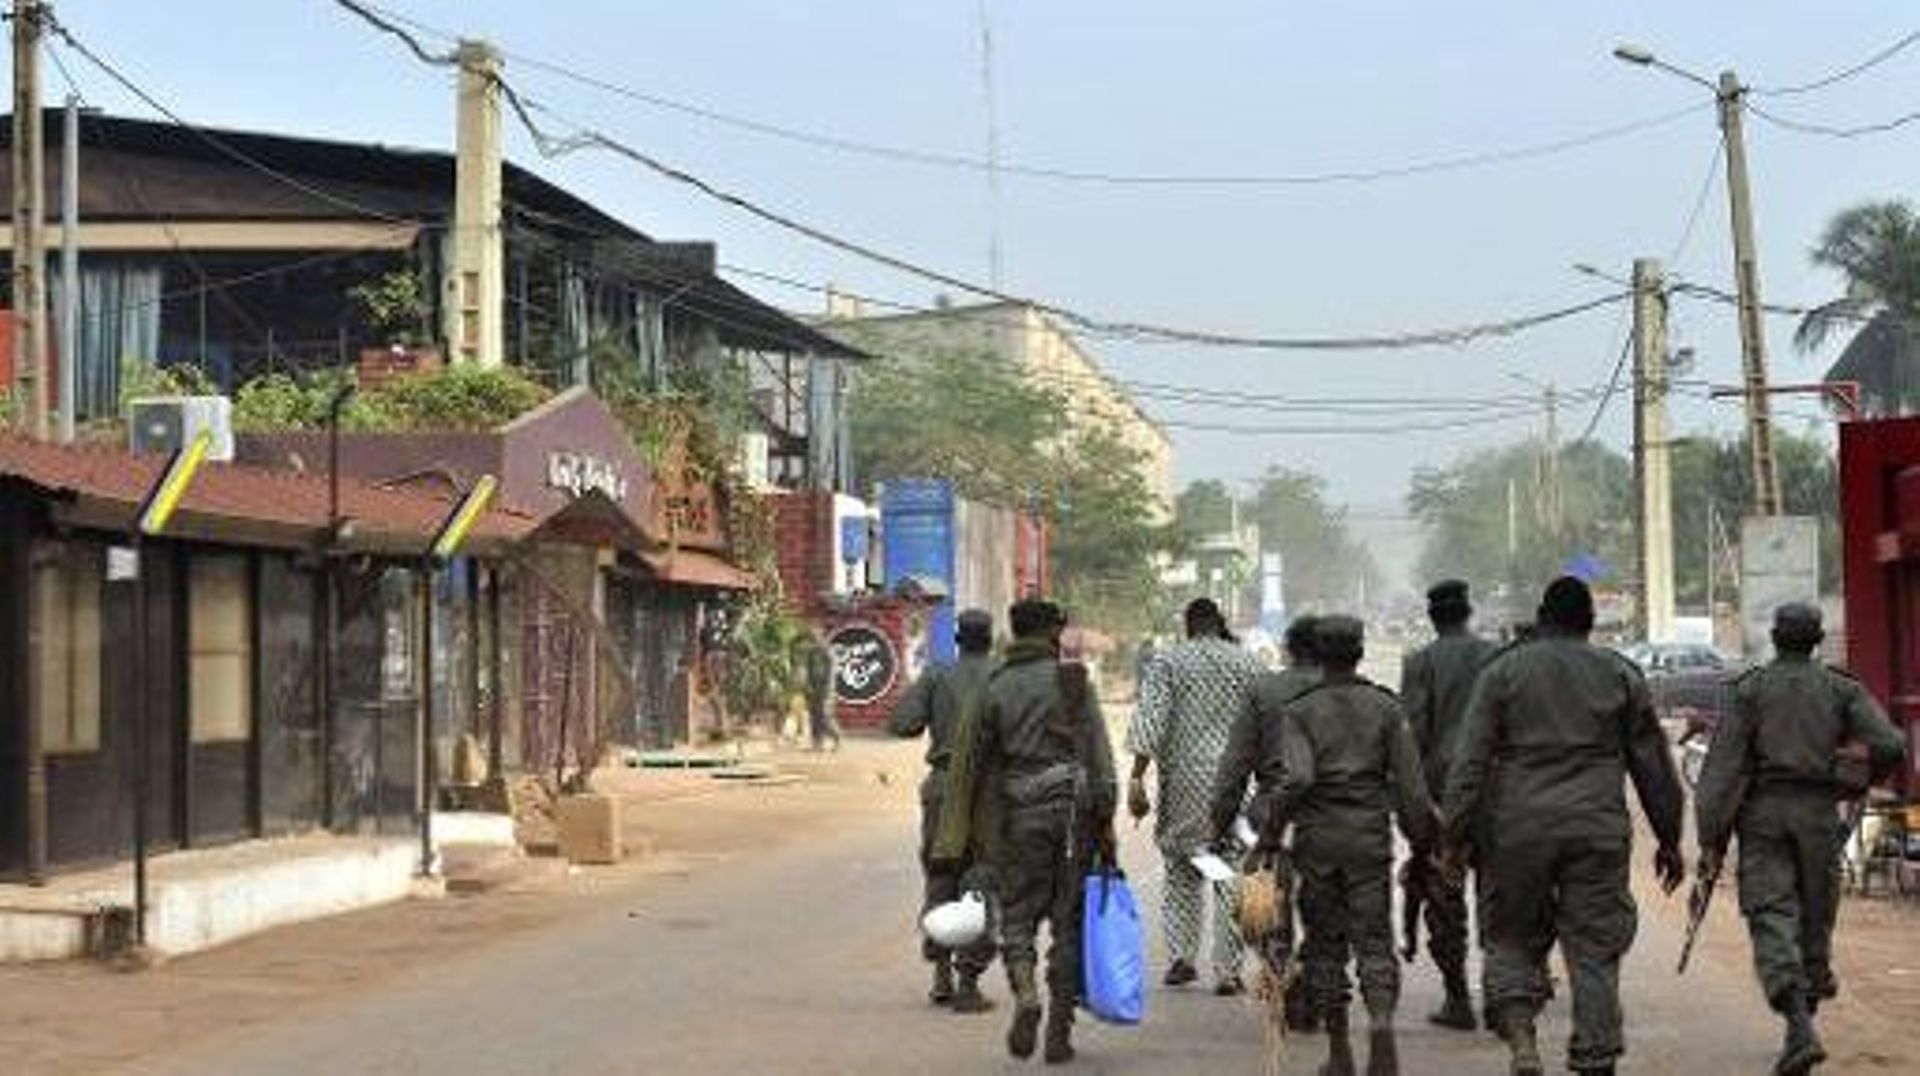 Des membres des forces de sécurité se dirigent vers le restaurant "La Terrasse", victime d'un attentat terroriste, à Bamako le 7 mars 2015